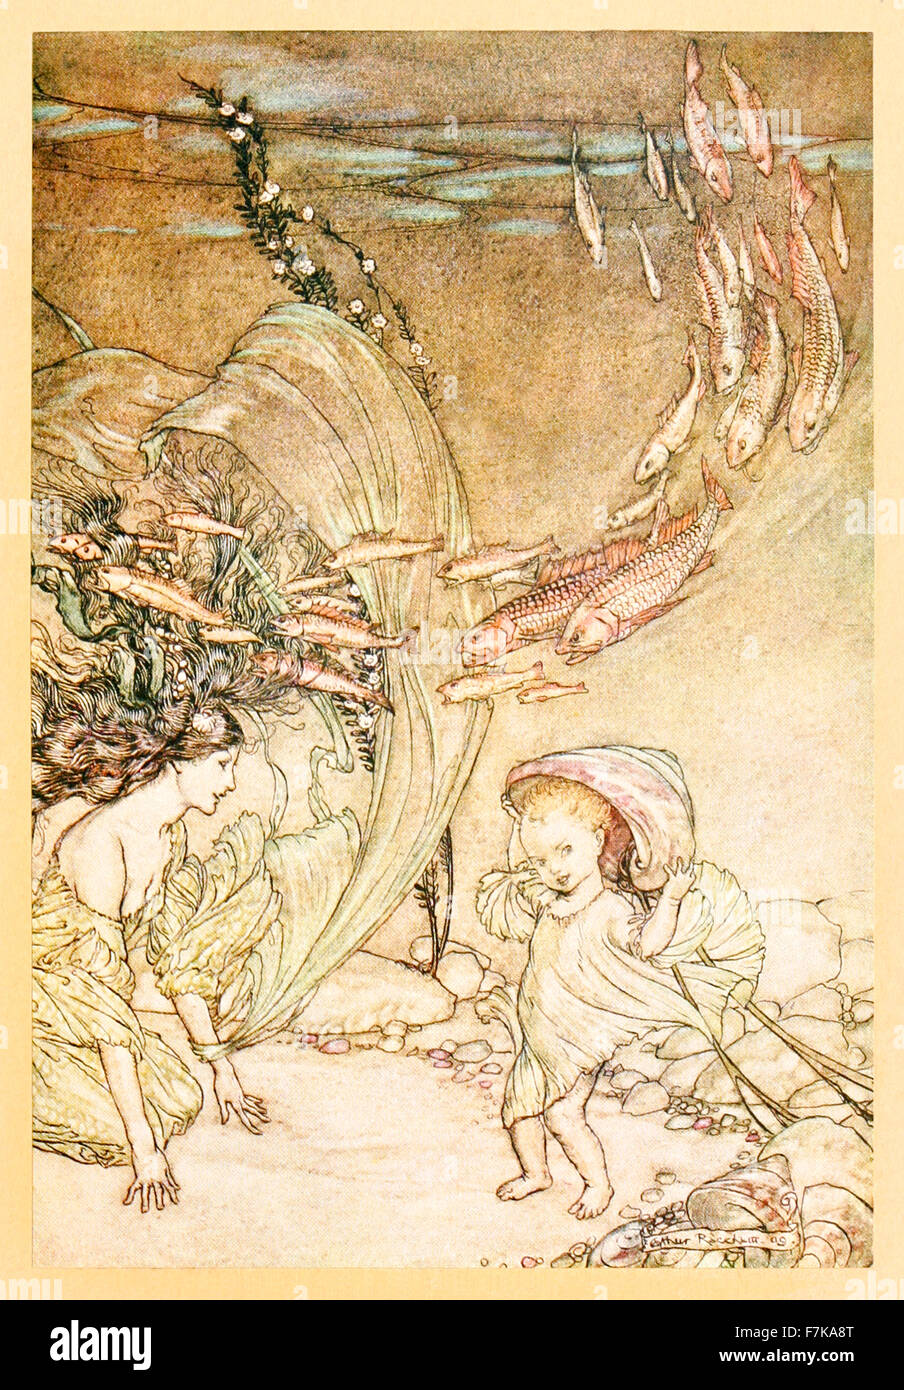 "Die Kindheit der Undine" von "Undine", illustriert von Arthur Rackham (1867-1939). Siehe Beschreibung für mehr Informationen. Stockfoto